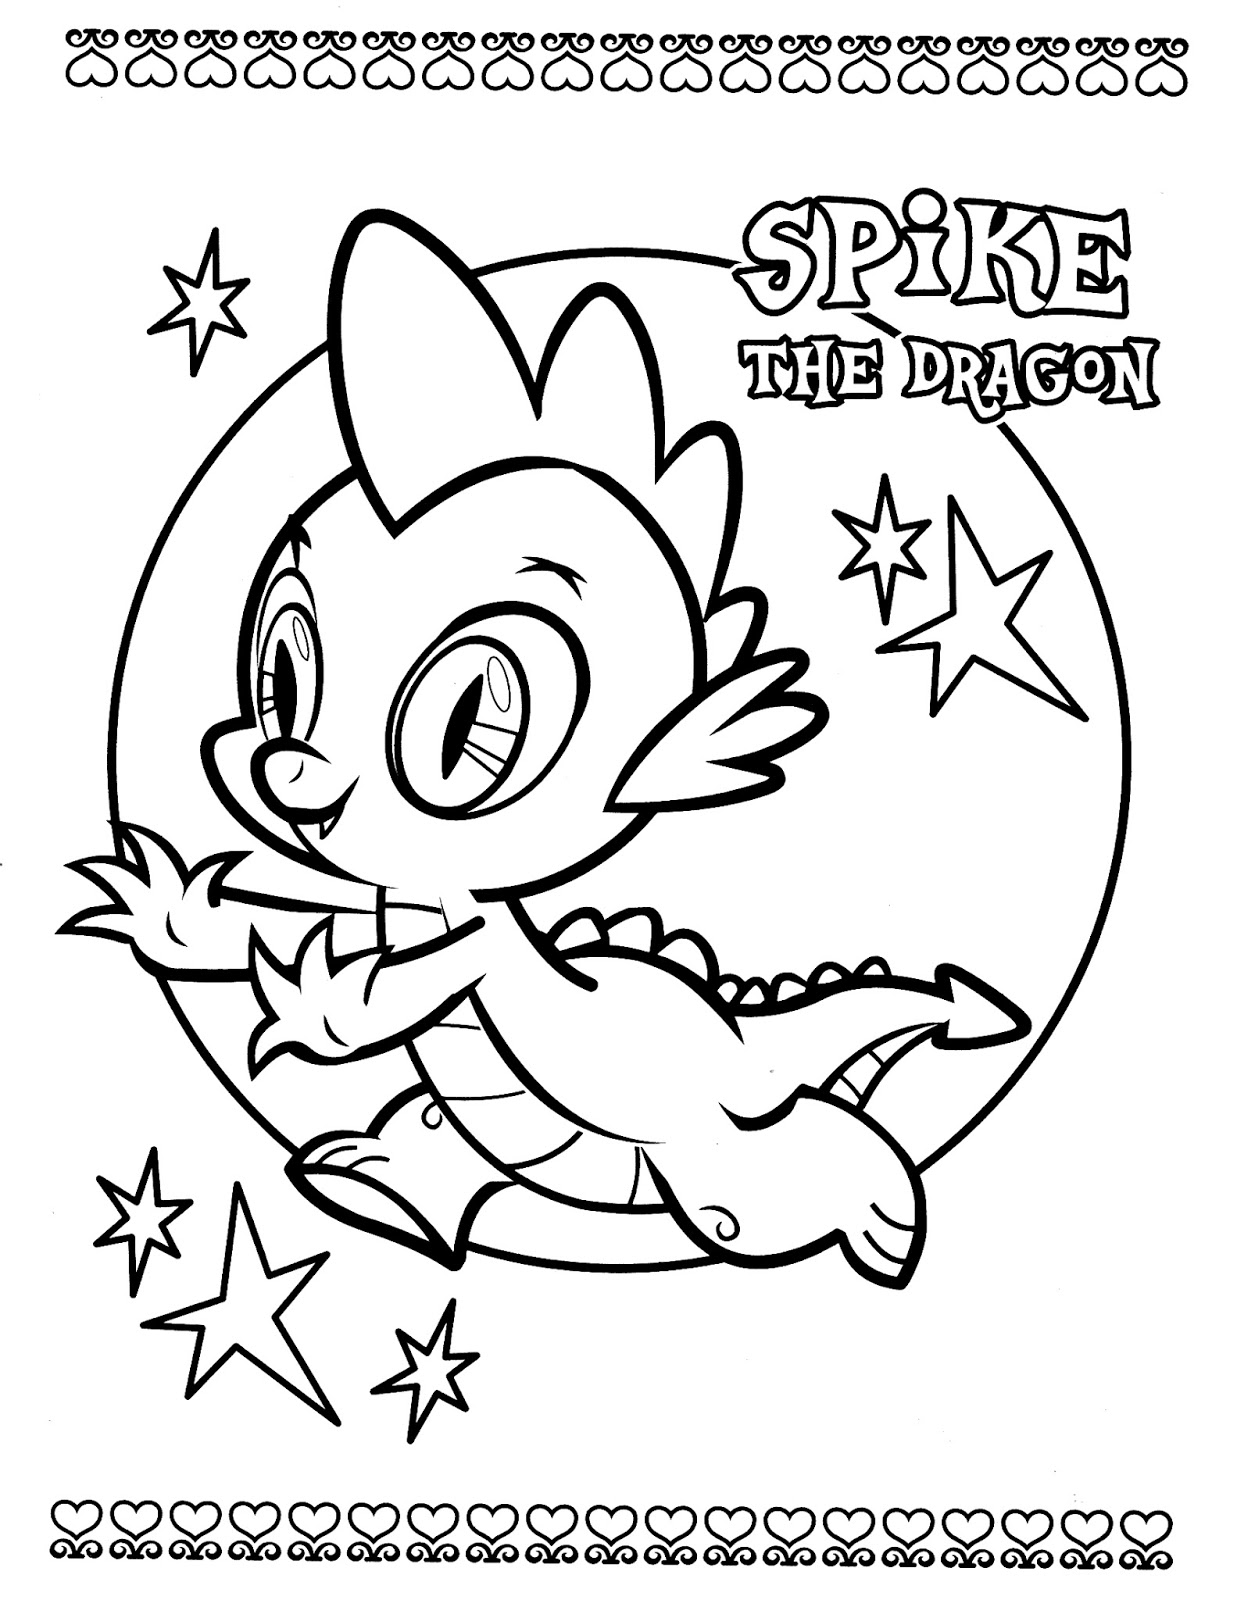 Imagens do Spike para colorir